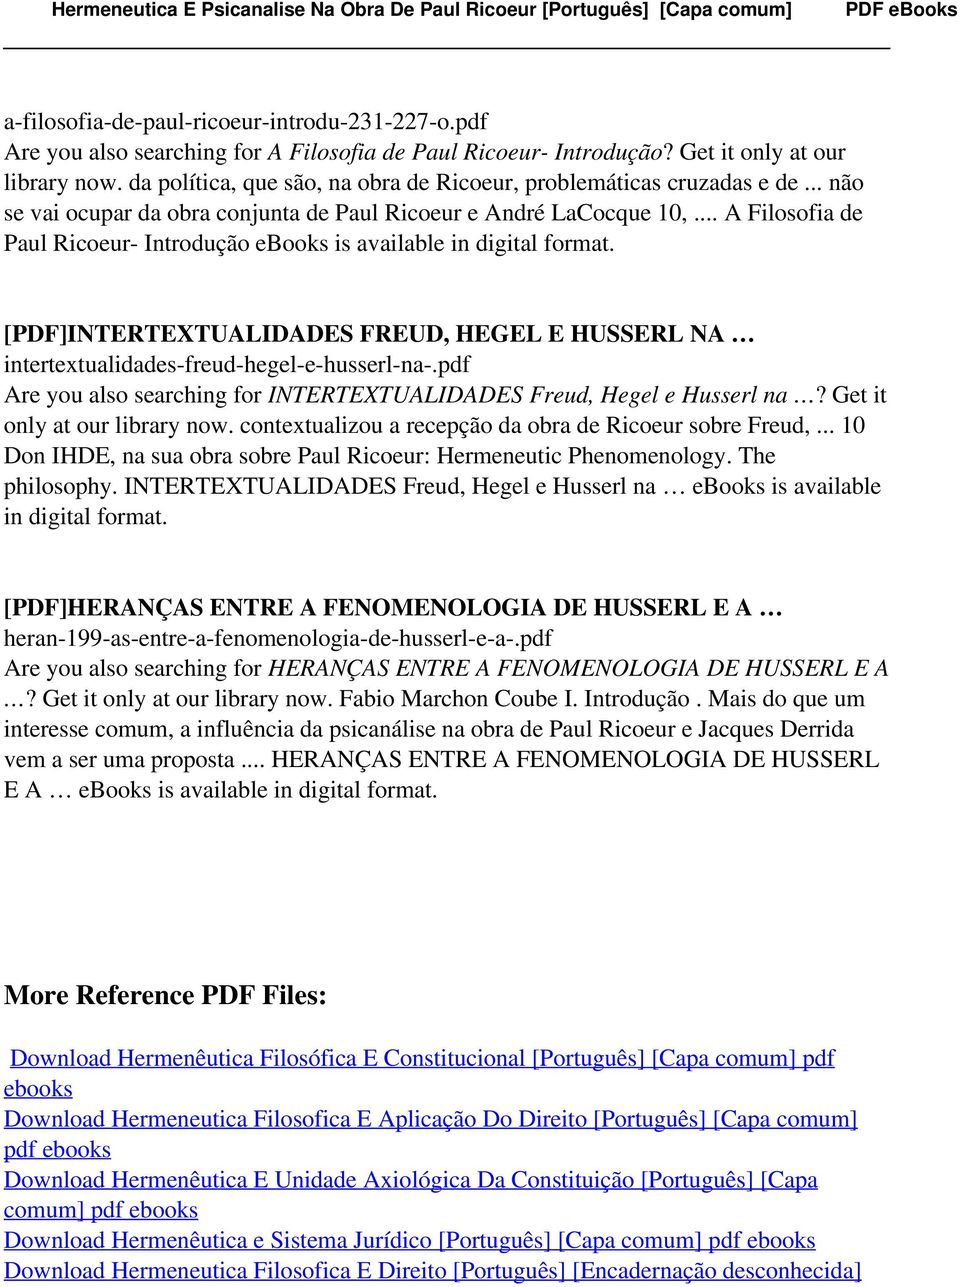 .. A Filosofia de Paul Ricoeur- Introdução ebooks is [PDF]INTERTEXTUALIDADES FREUD, HEGEL E HUSSERL NA intertextualidades-freud-hegel-e-husserl-na-.